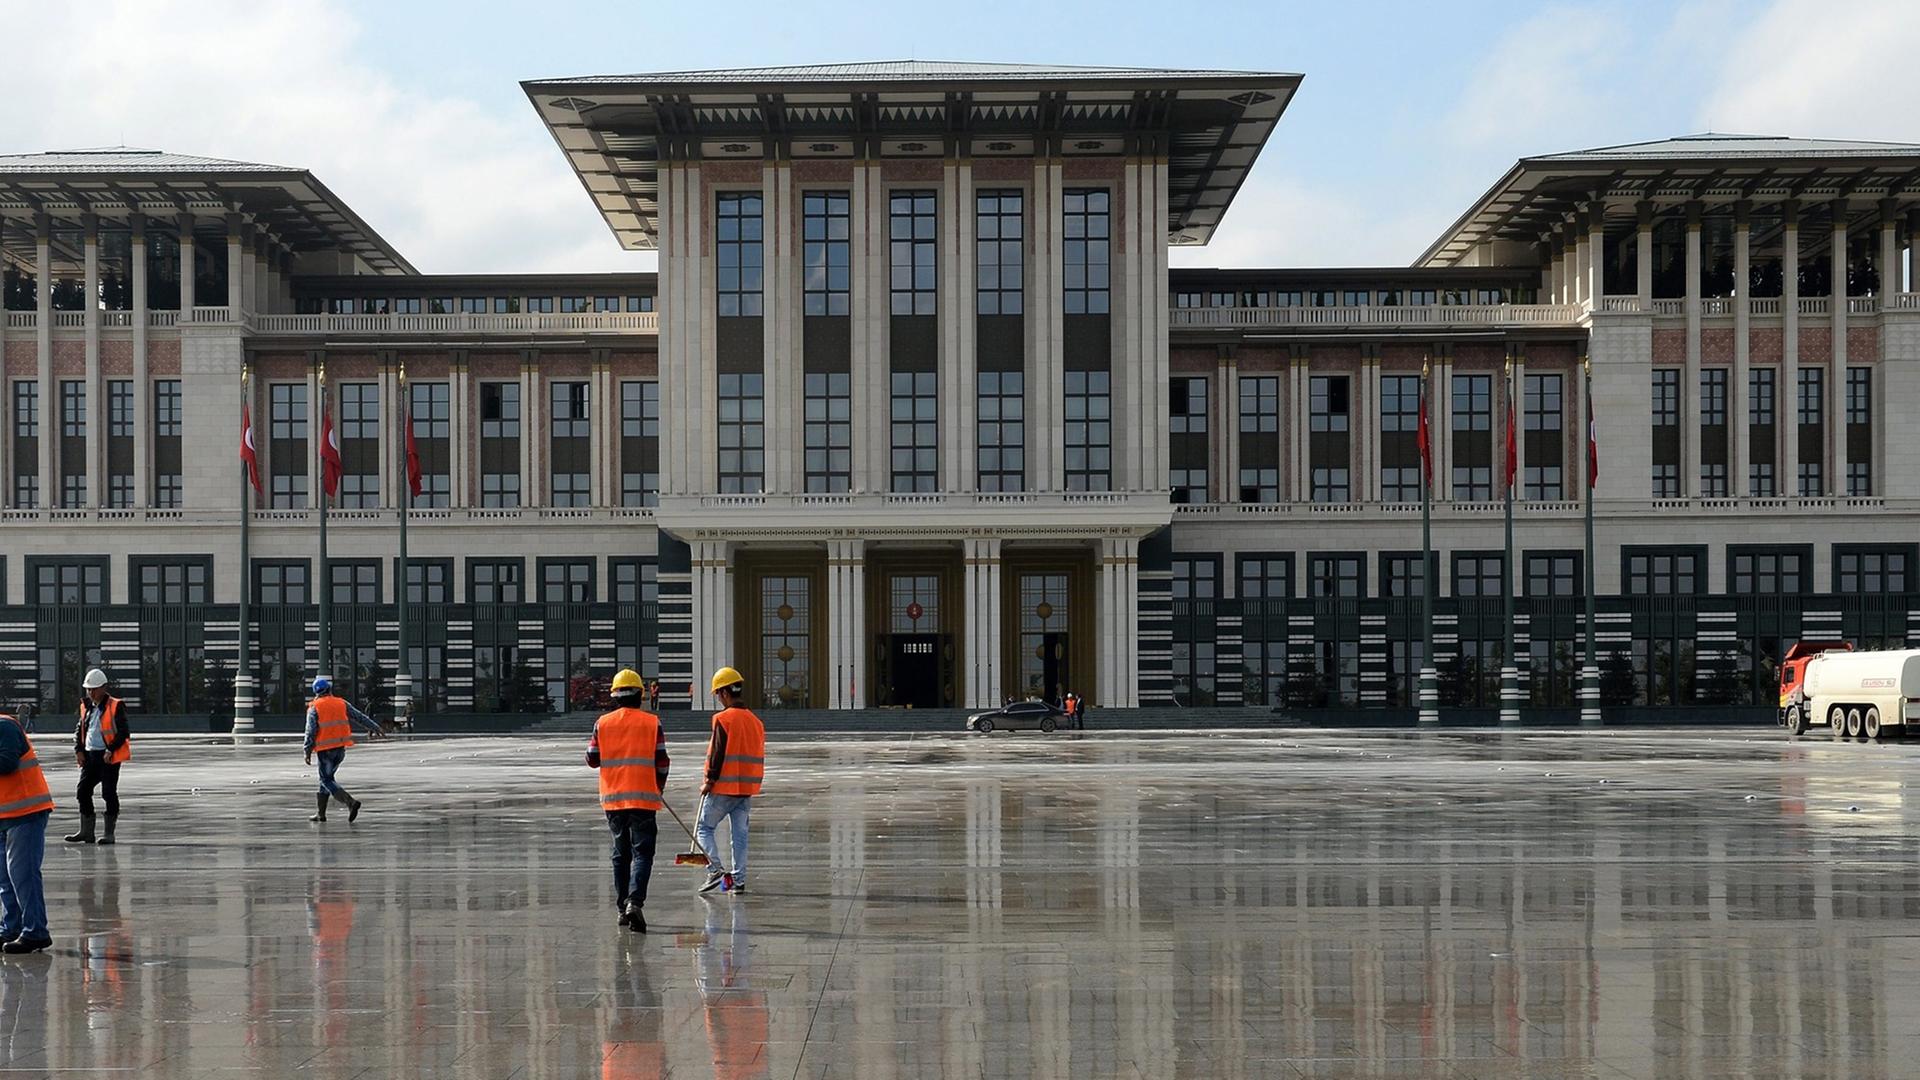 Blick auf den neuen Amtssitz von Tayyip Erdogan in Ankara, genannt "Der Weiße Palast"